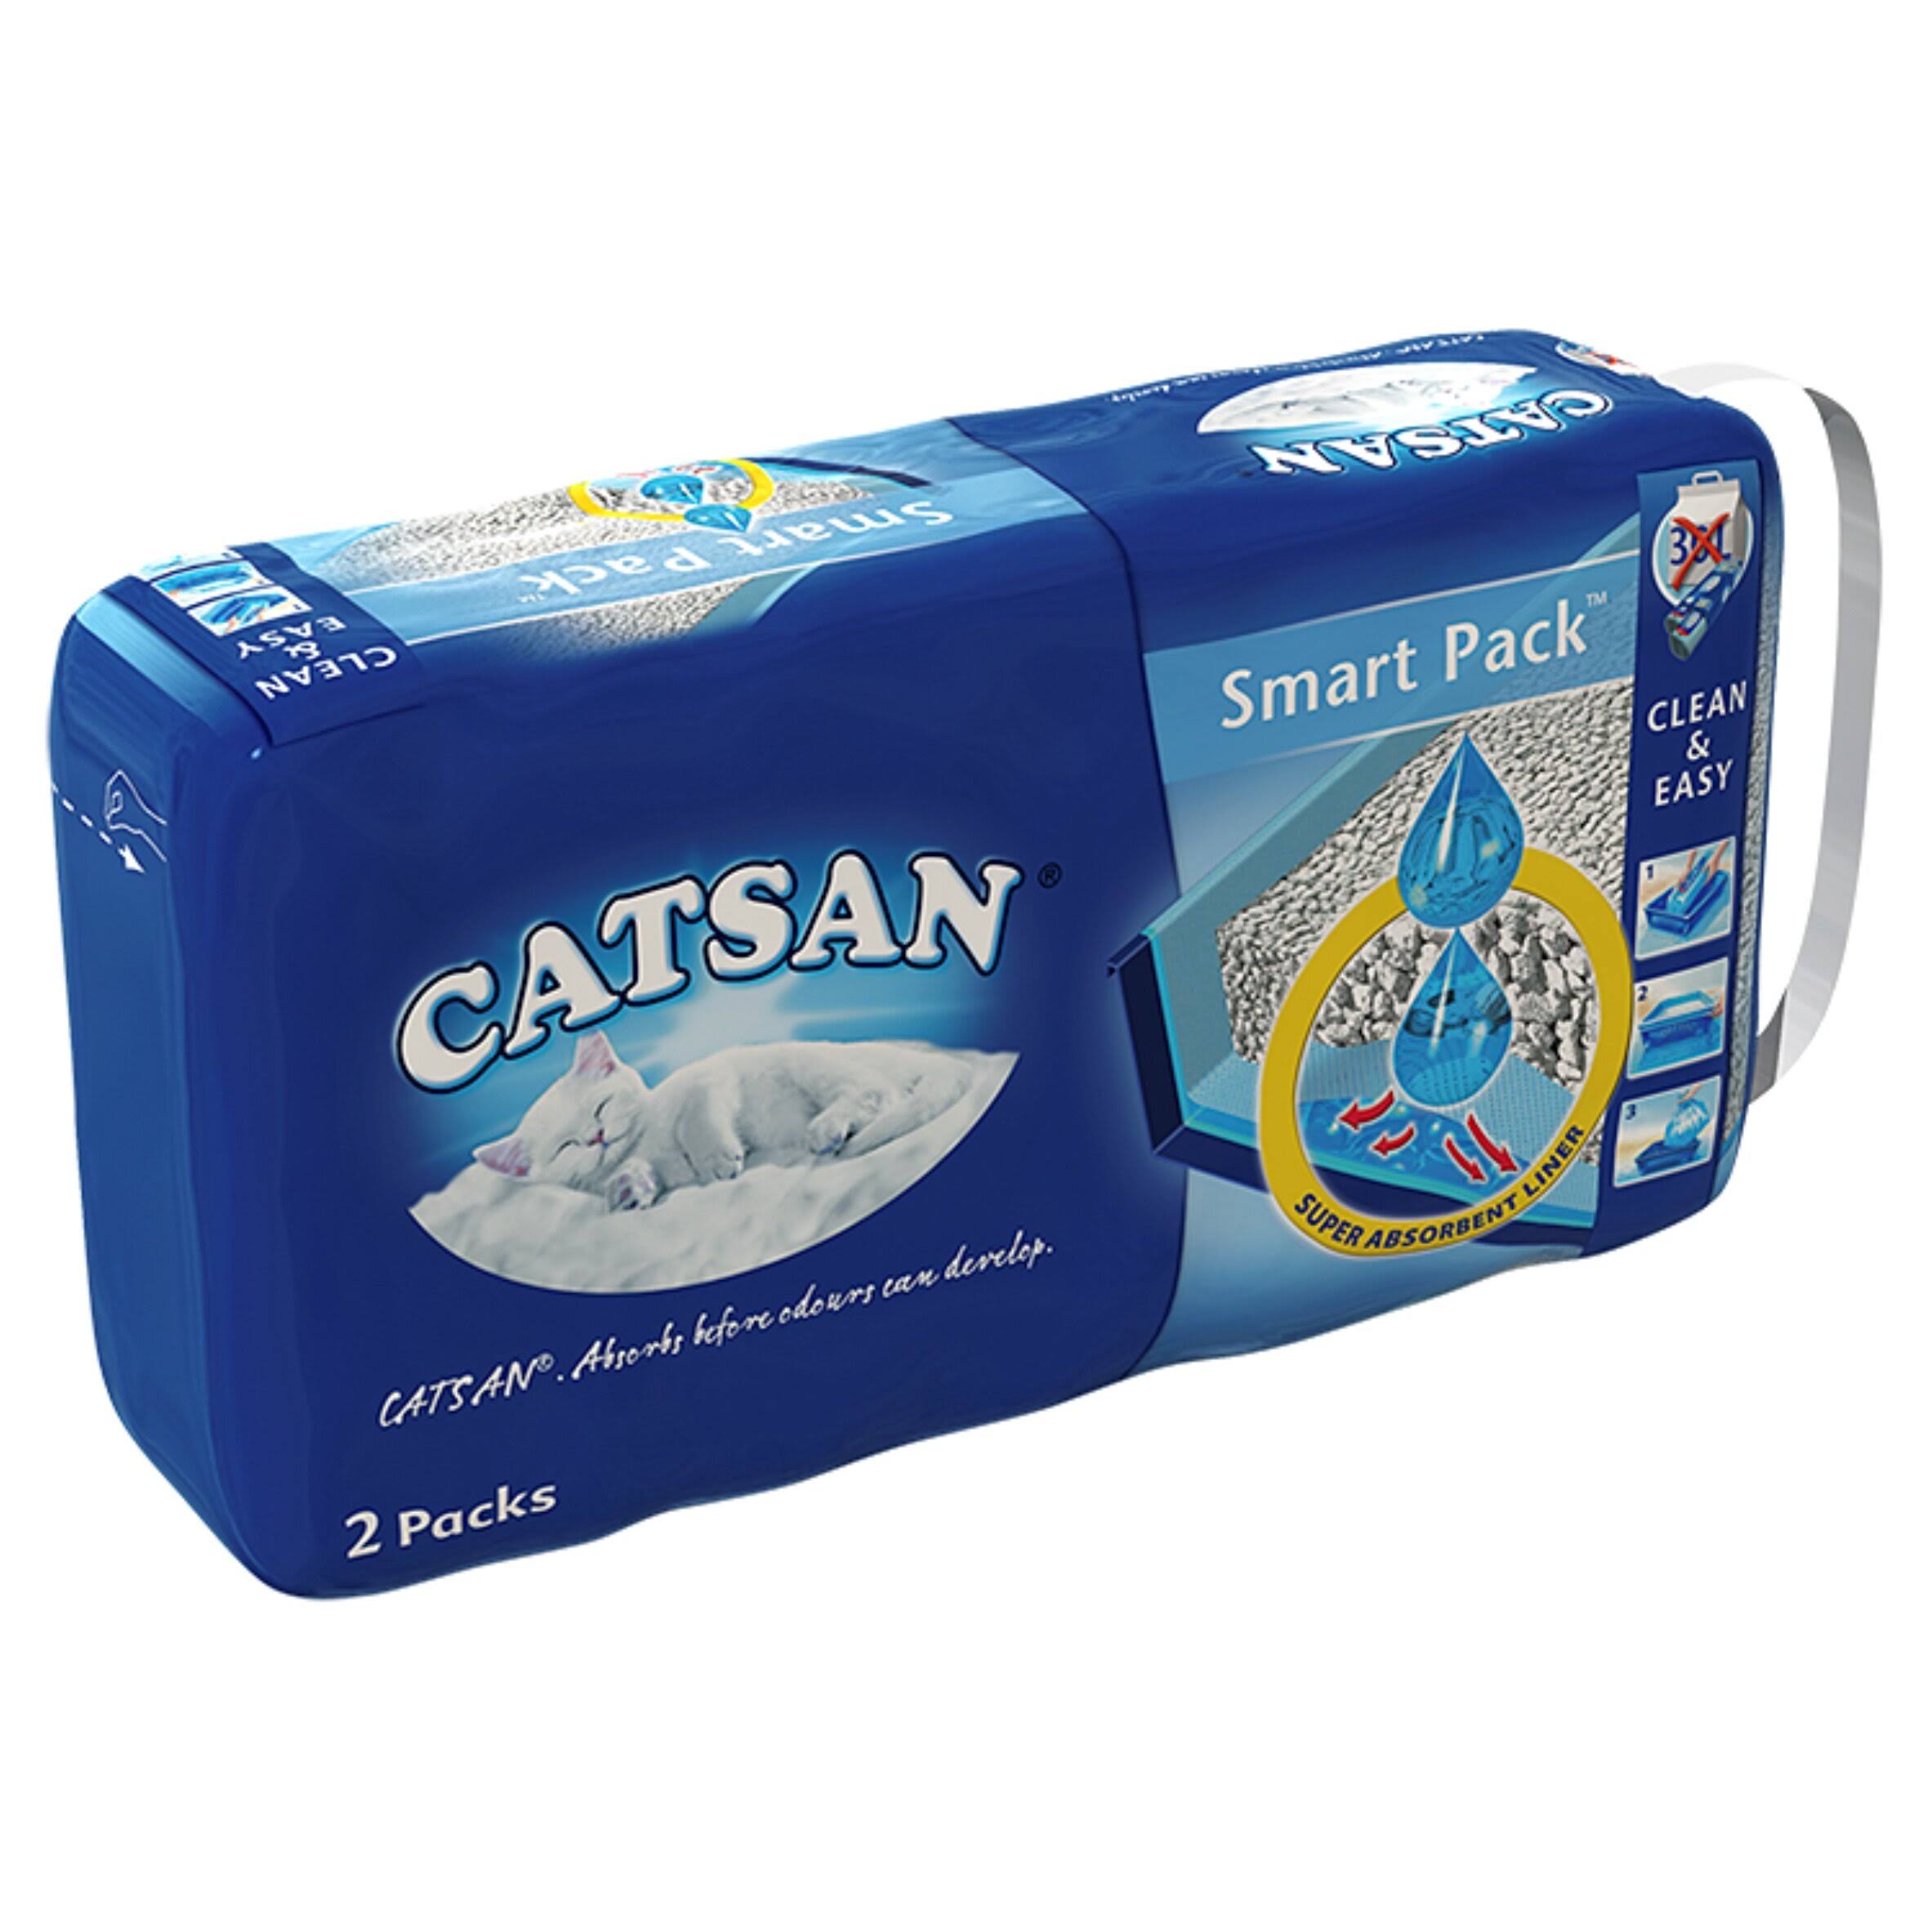 Catsan Smart Pack Cat Litter Bag - 2 Packs